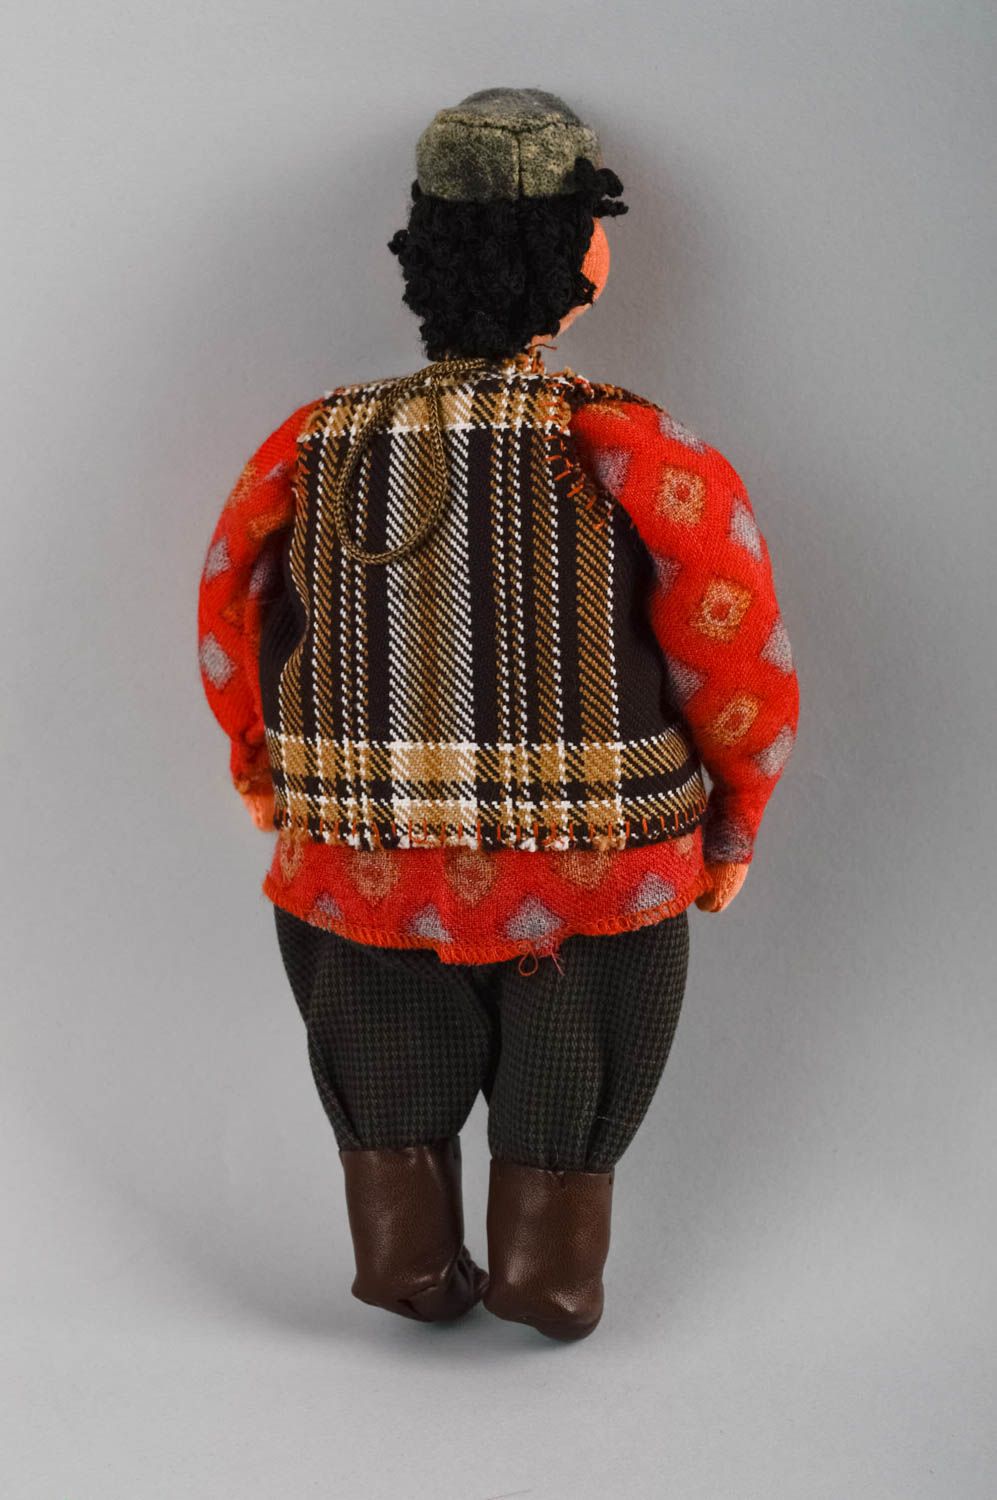 Коллекционная кукла мужчина в красном забавный небольшой для декора хэнд мейд фото 2